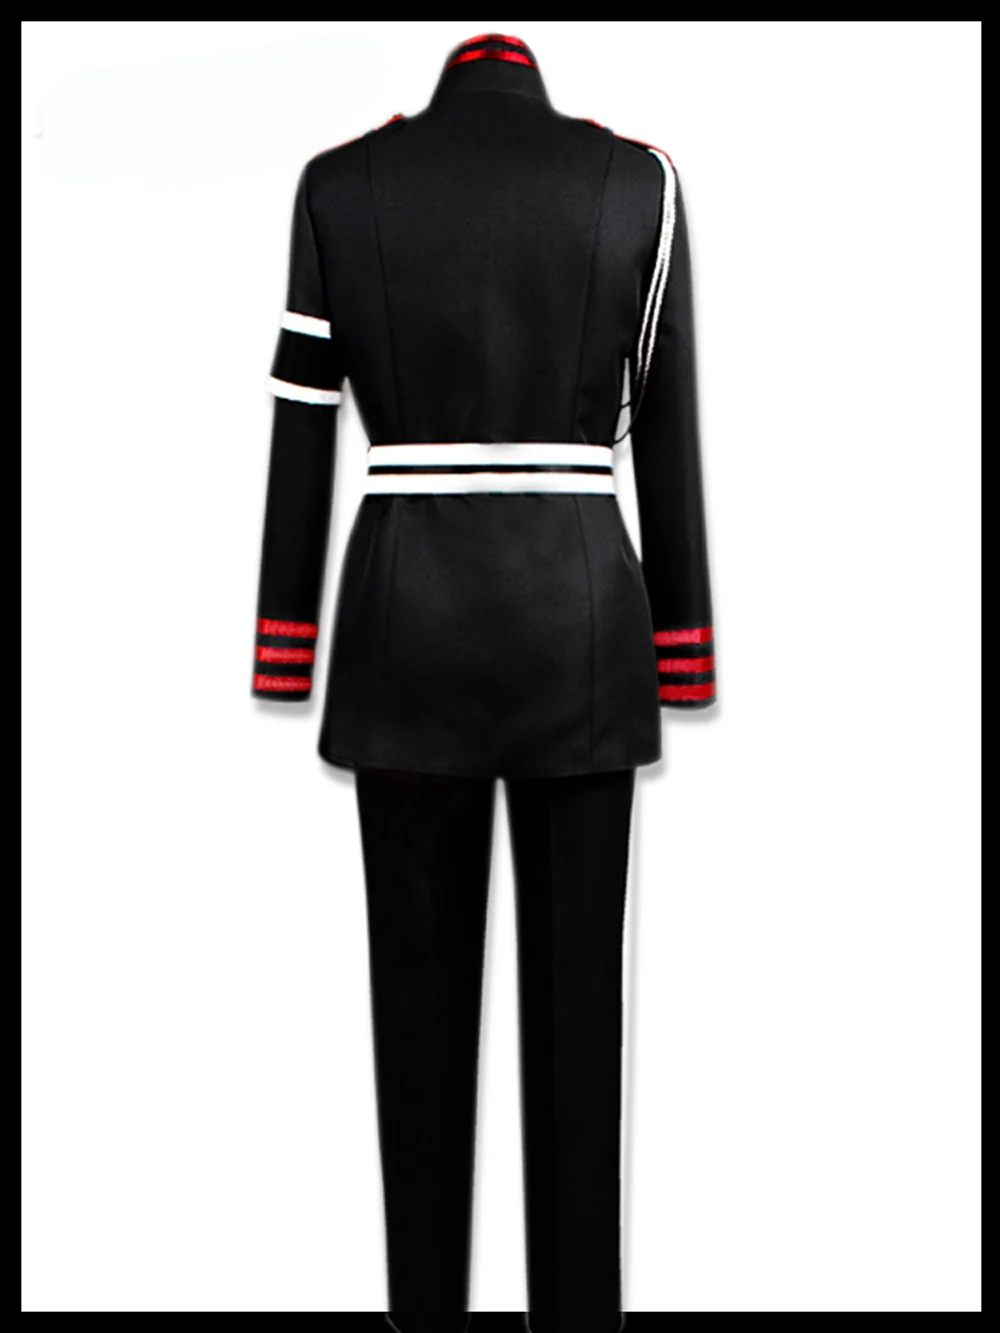 VEVEFHUANG аниме Seraph of the end(Owari no Serafu косплэй костюм guren ichinose Косплэй костюм, одежда для мальчиков в стиле военной формы, наряд на Хэллоуин Костюмы набор